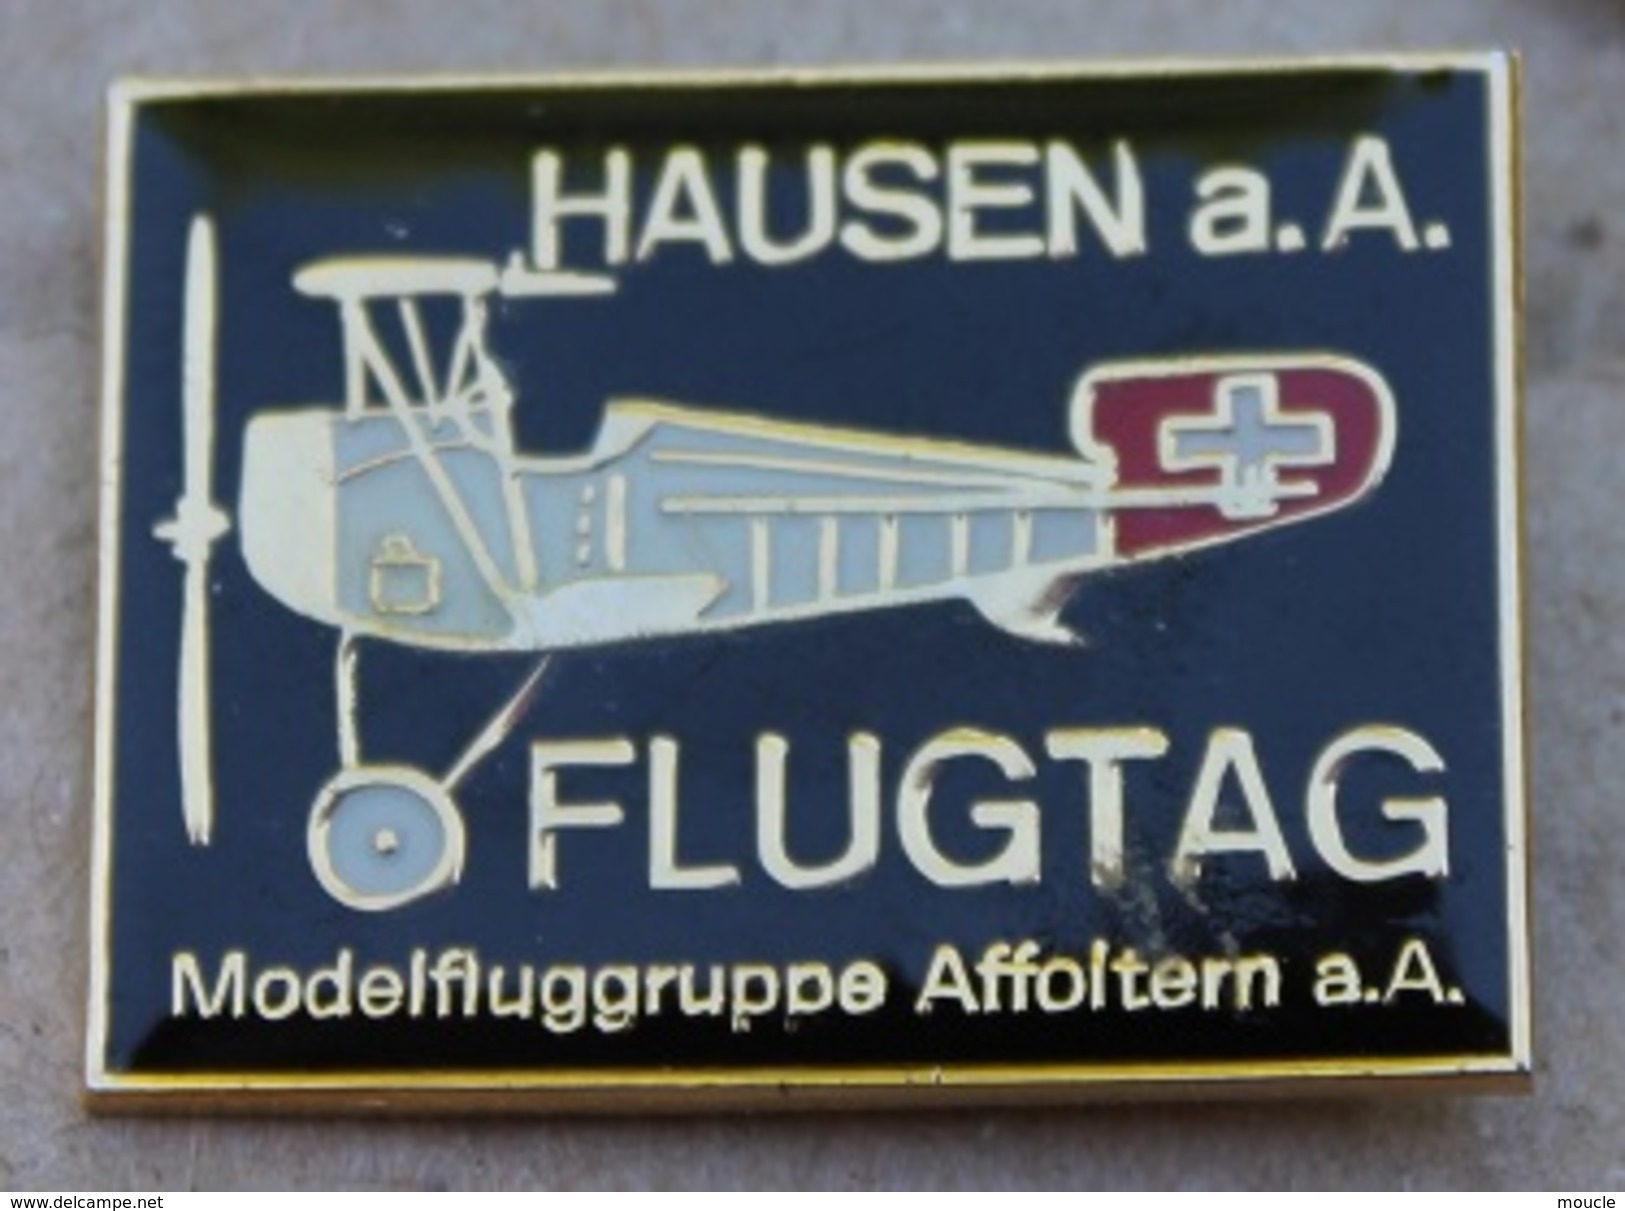 AVION - HAUSEN A.A FLUGTAG - MODELFLUGGRUPPE AFFOLTERM A.A - SCHWEIZ - SUISSE -    (JAUNE) - Luftfahrt